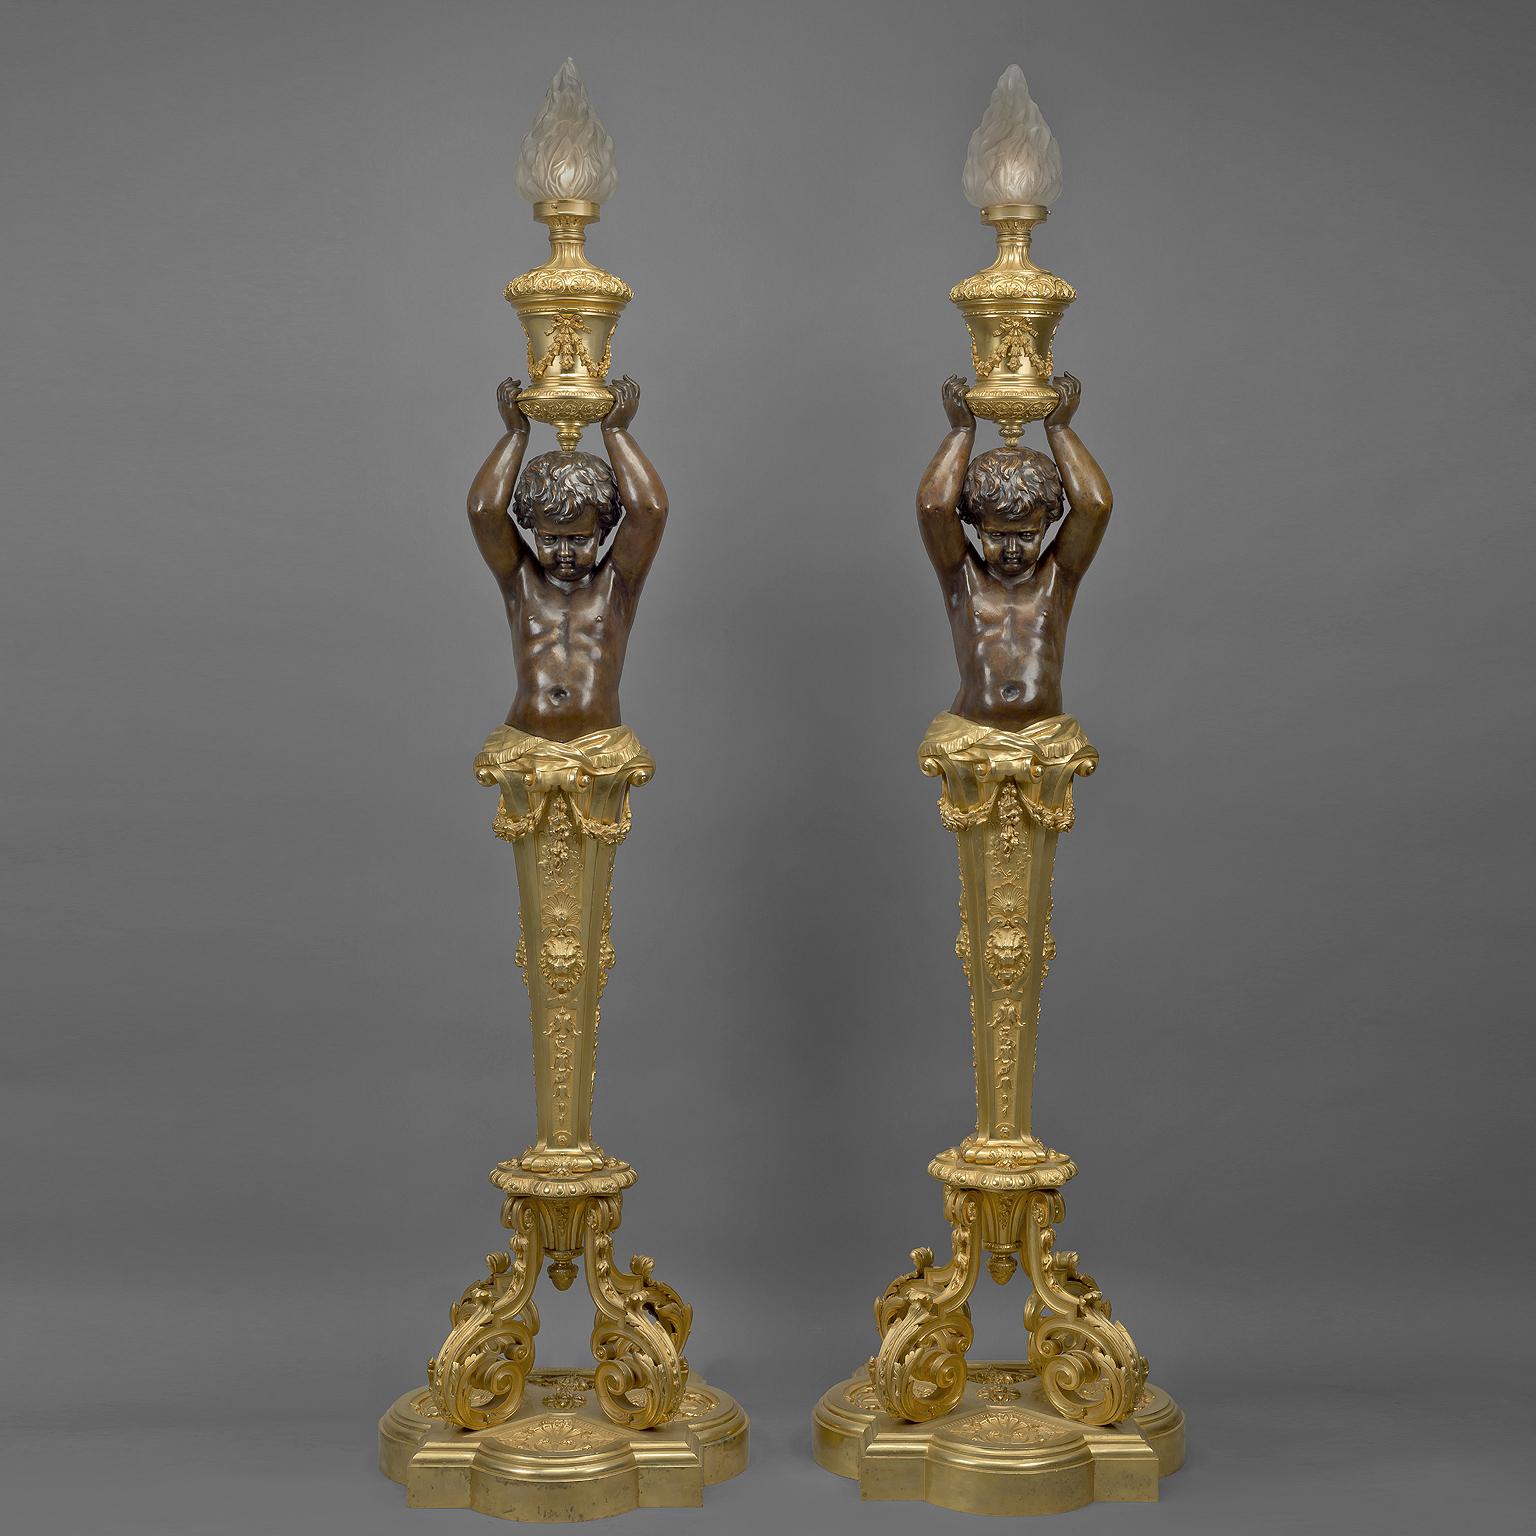 Une impressionnante paire de torchères figuratives en bronze doré de Napoléon III par Goelzer et Poumaroux, Paris. 

Signé sur les socles 